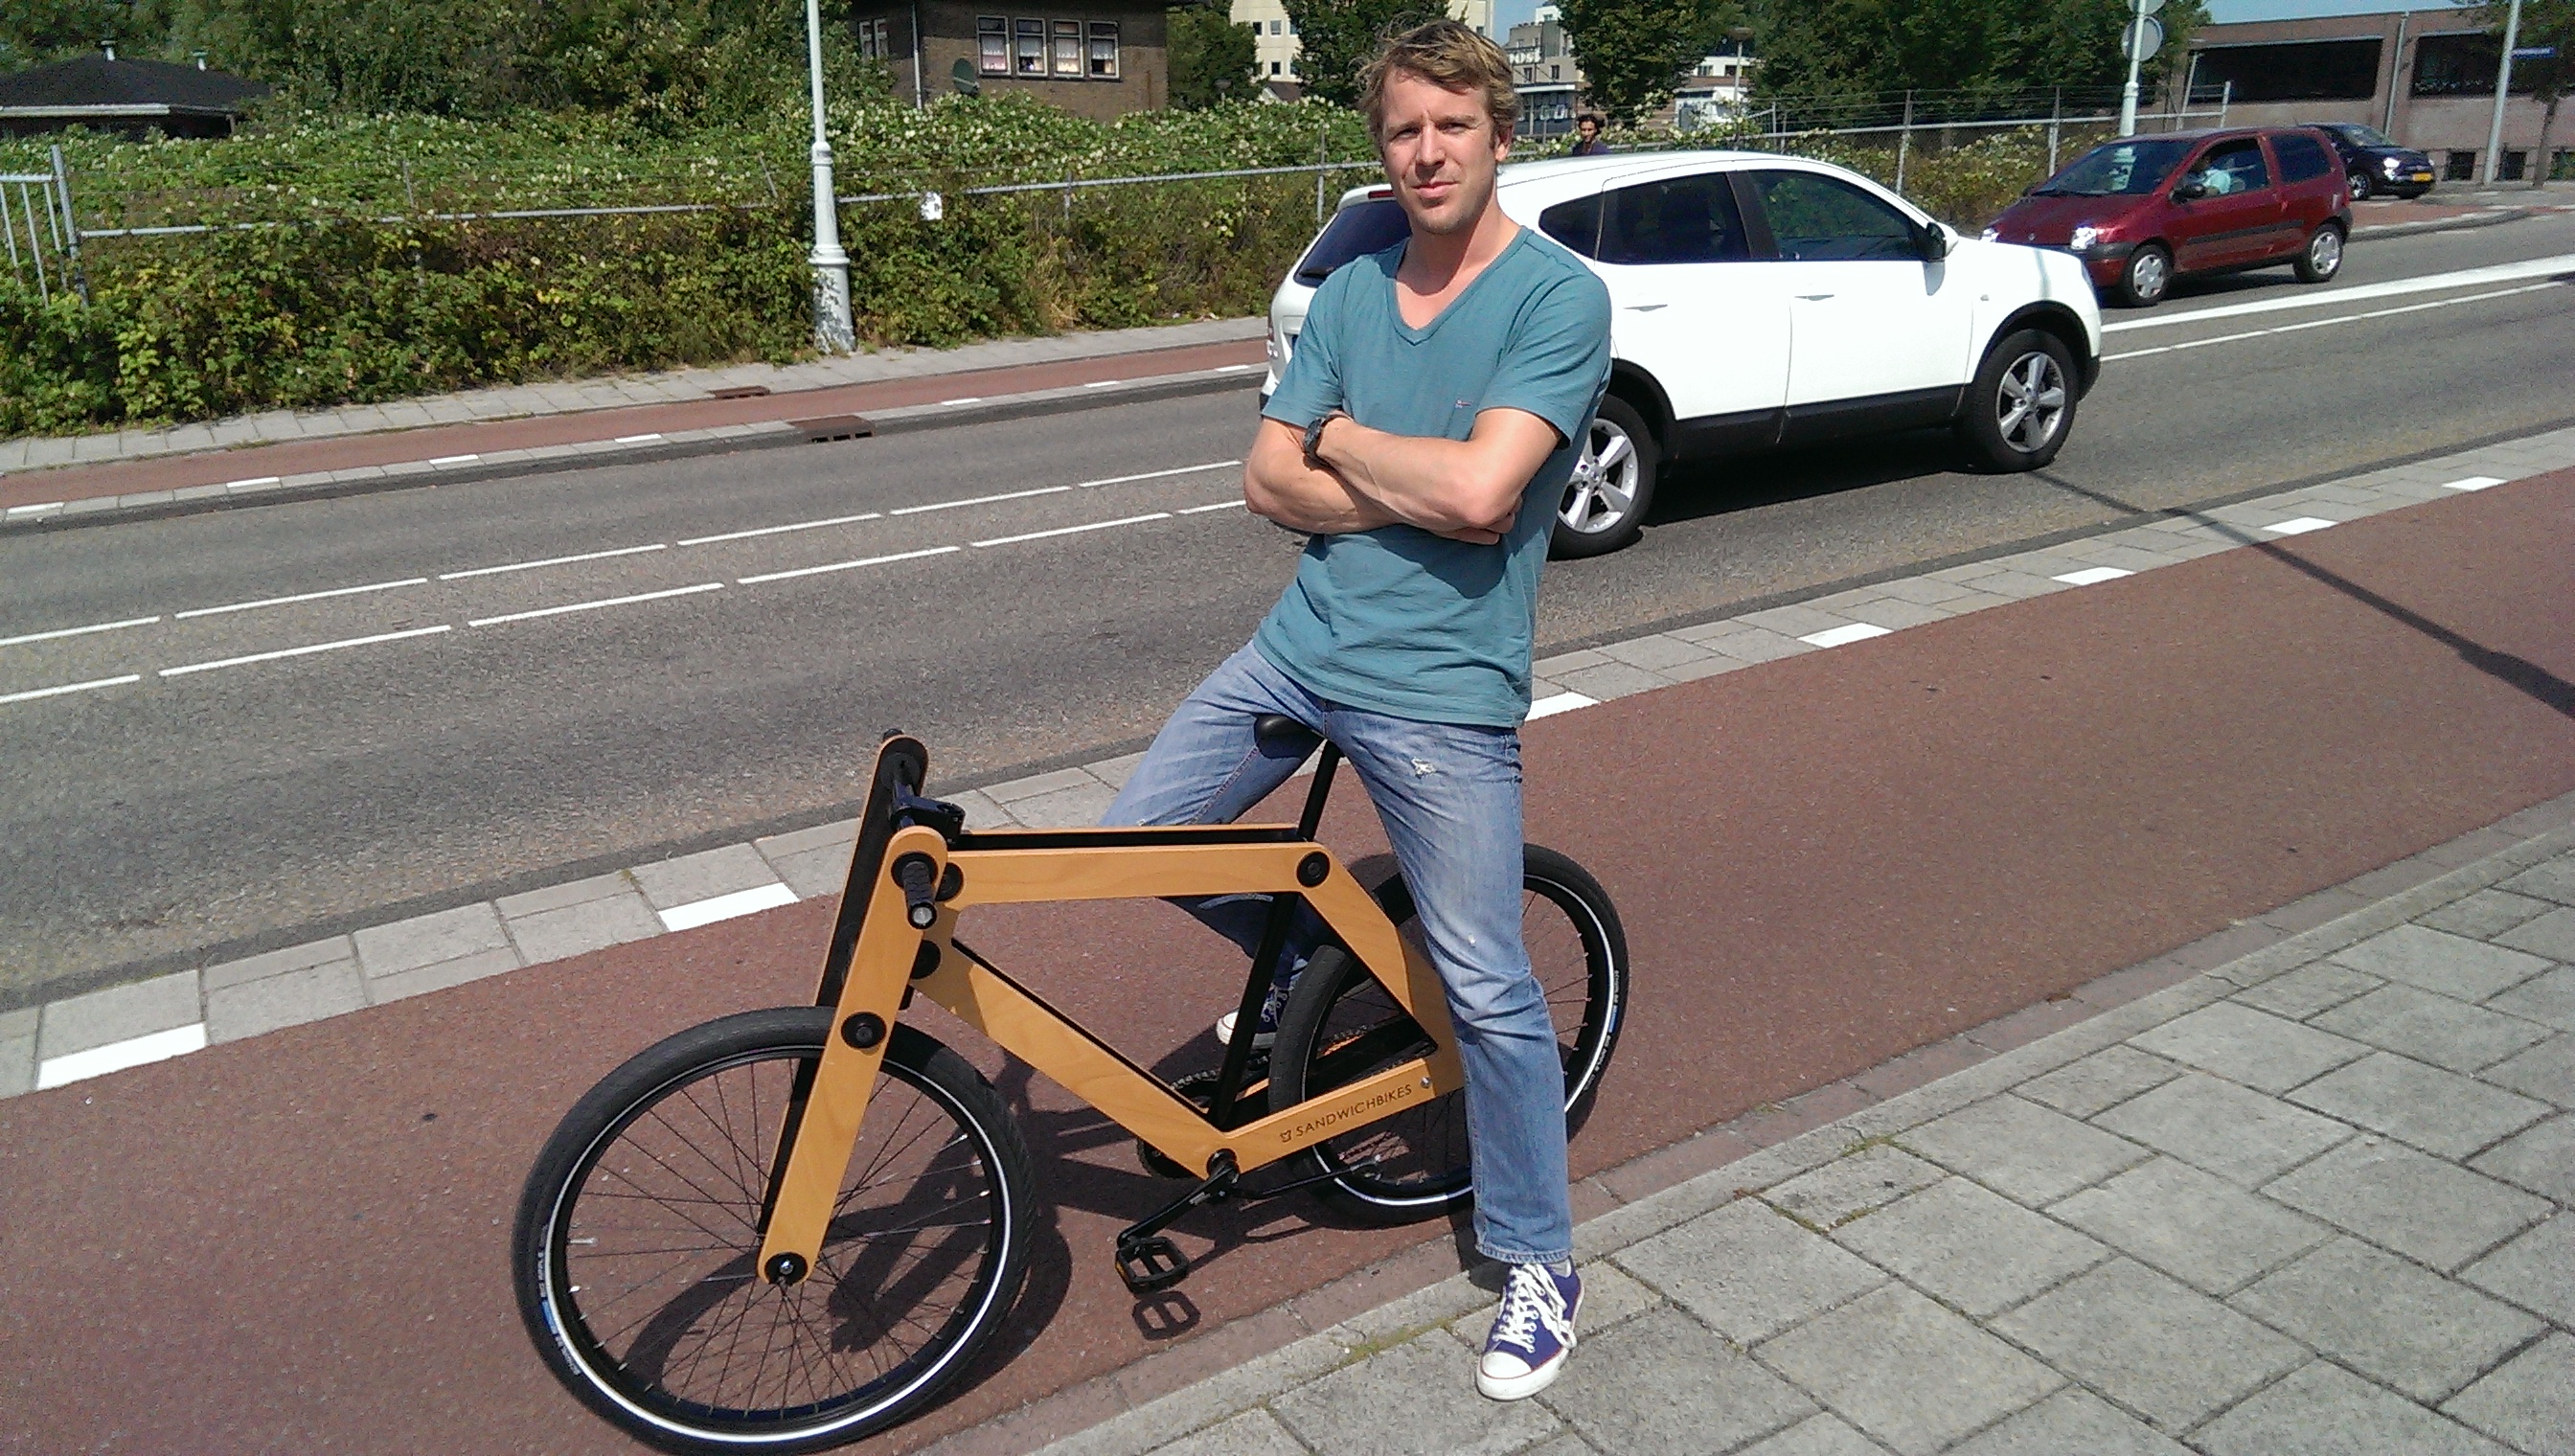 erts Eenheid Middel t Gat in de Markt: houten fiets die je zelf in elkaar zet